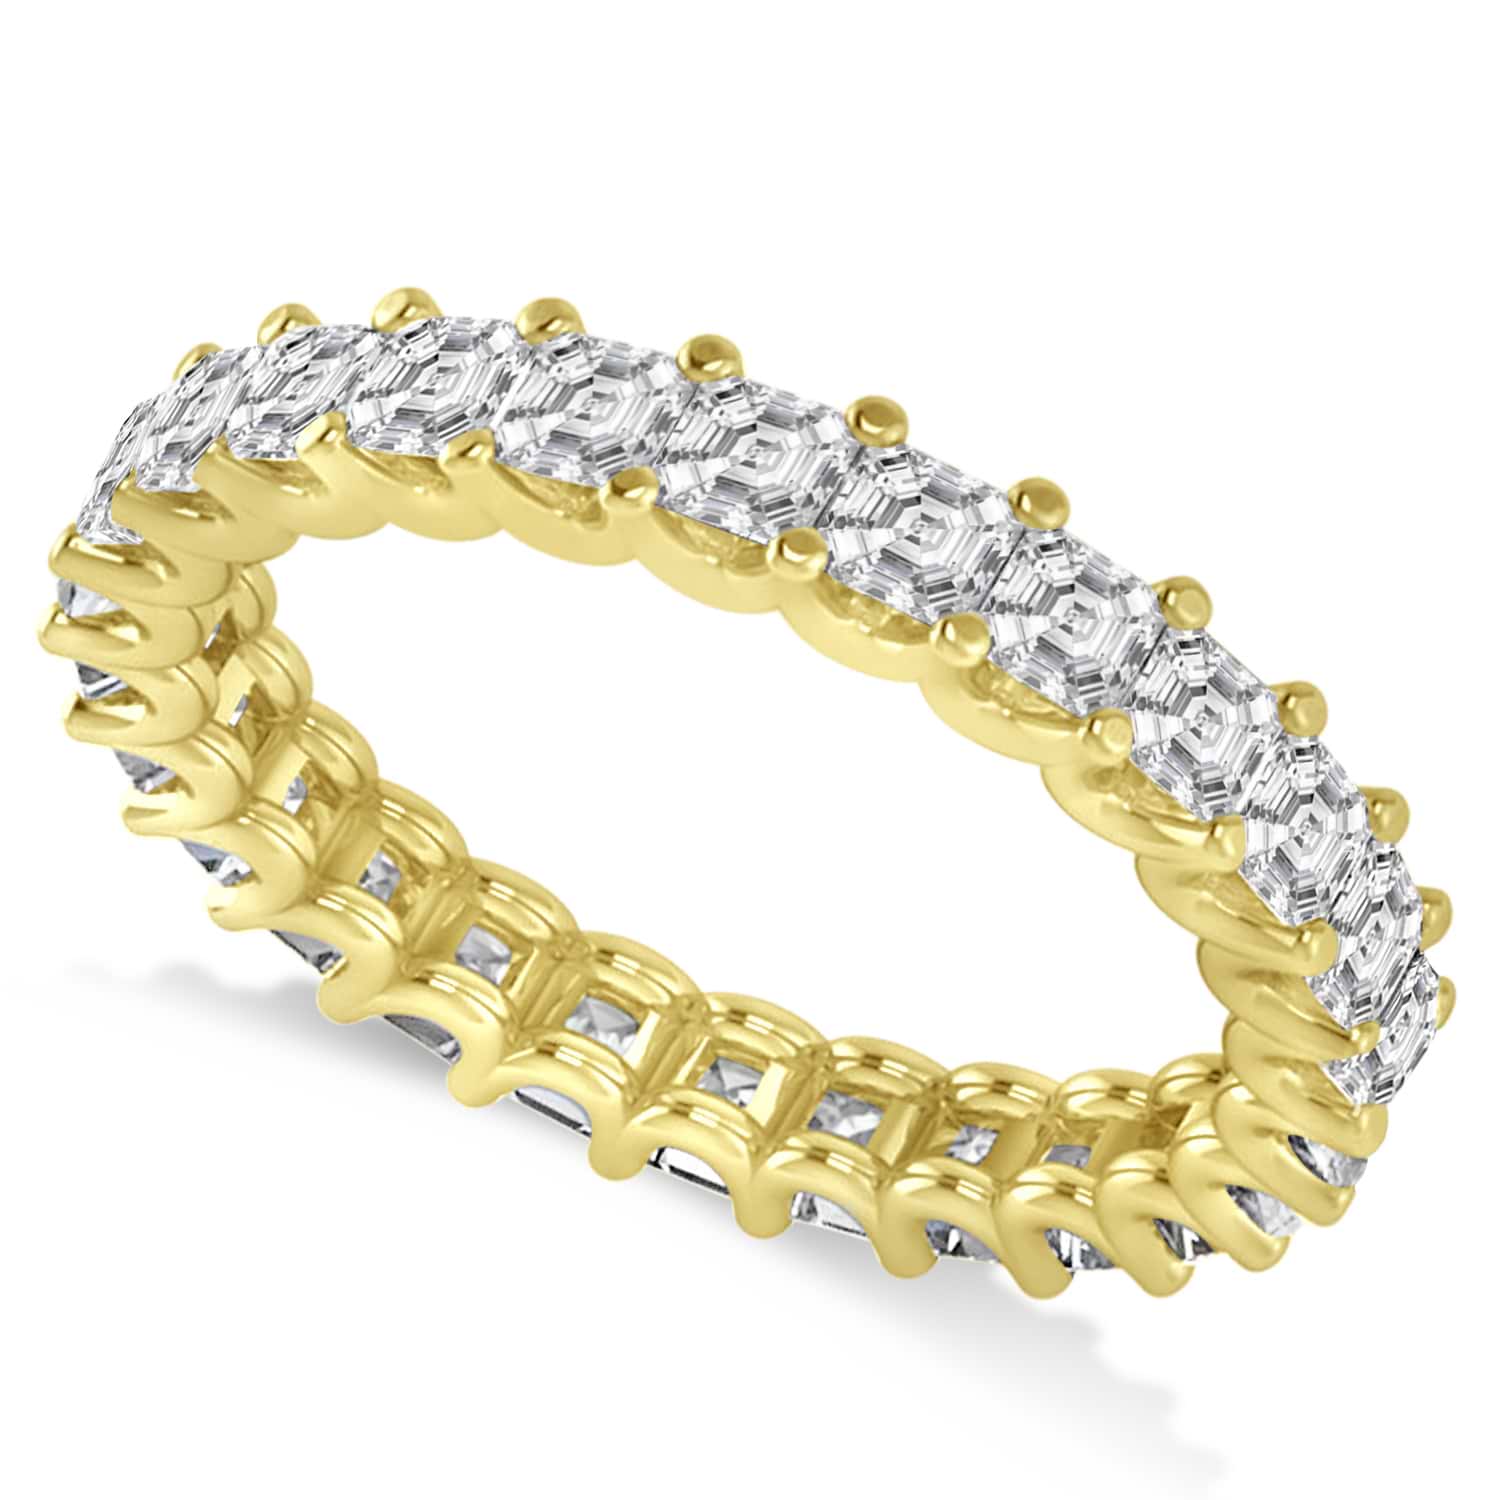 Asscher-Cut Diamond Eternity Wedding Band Ring 14k Yellow Gold (2.60ct)